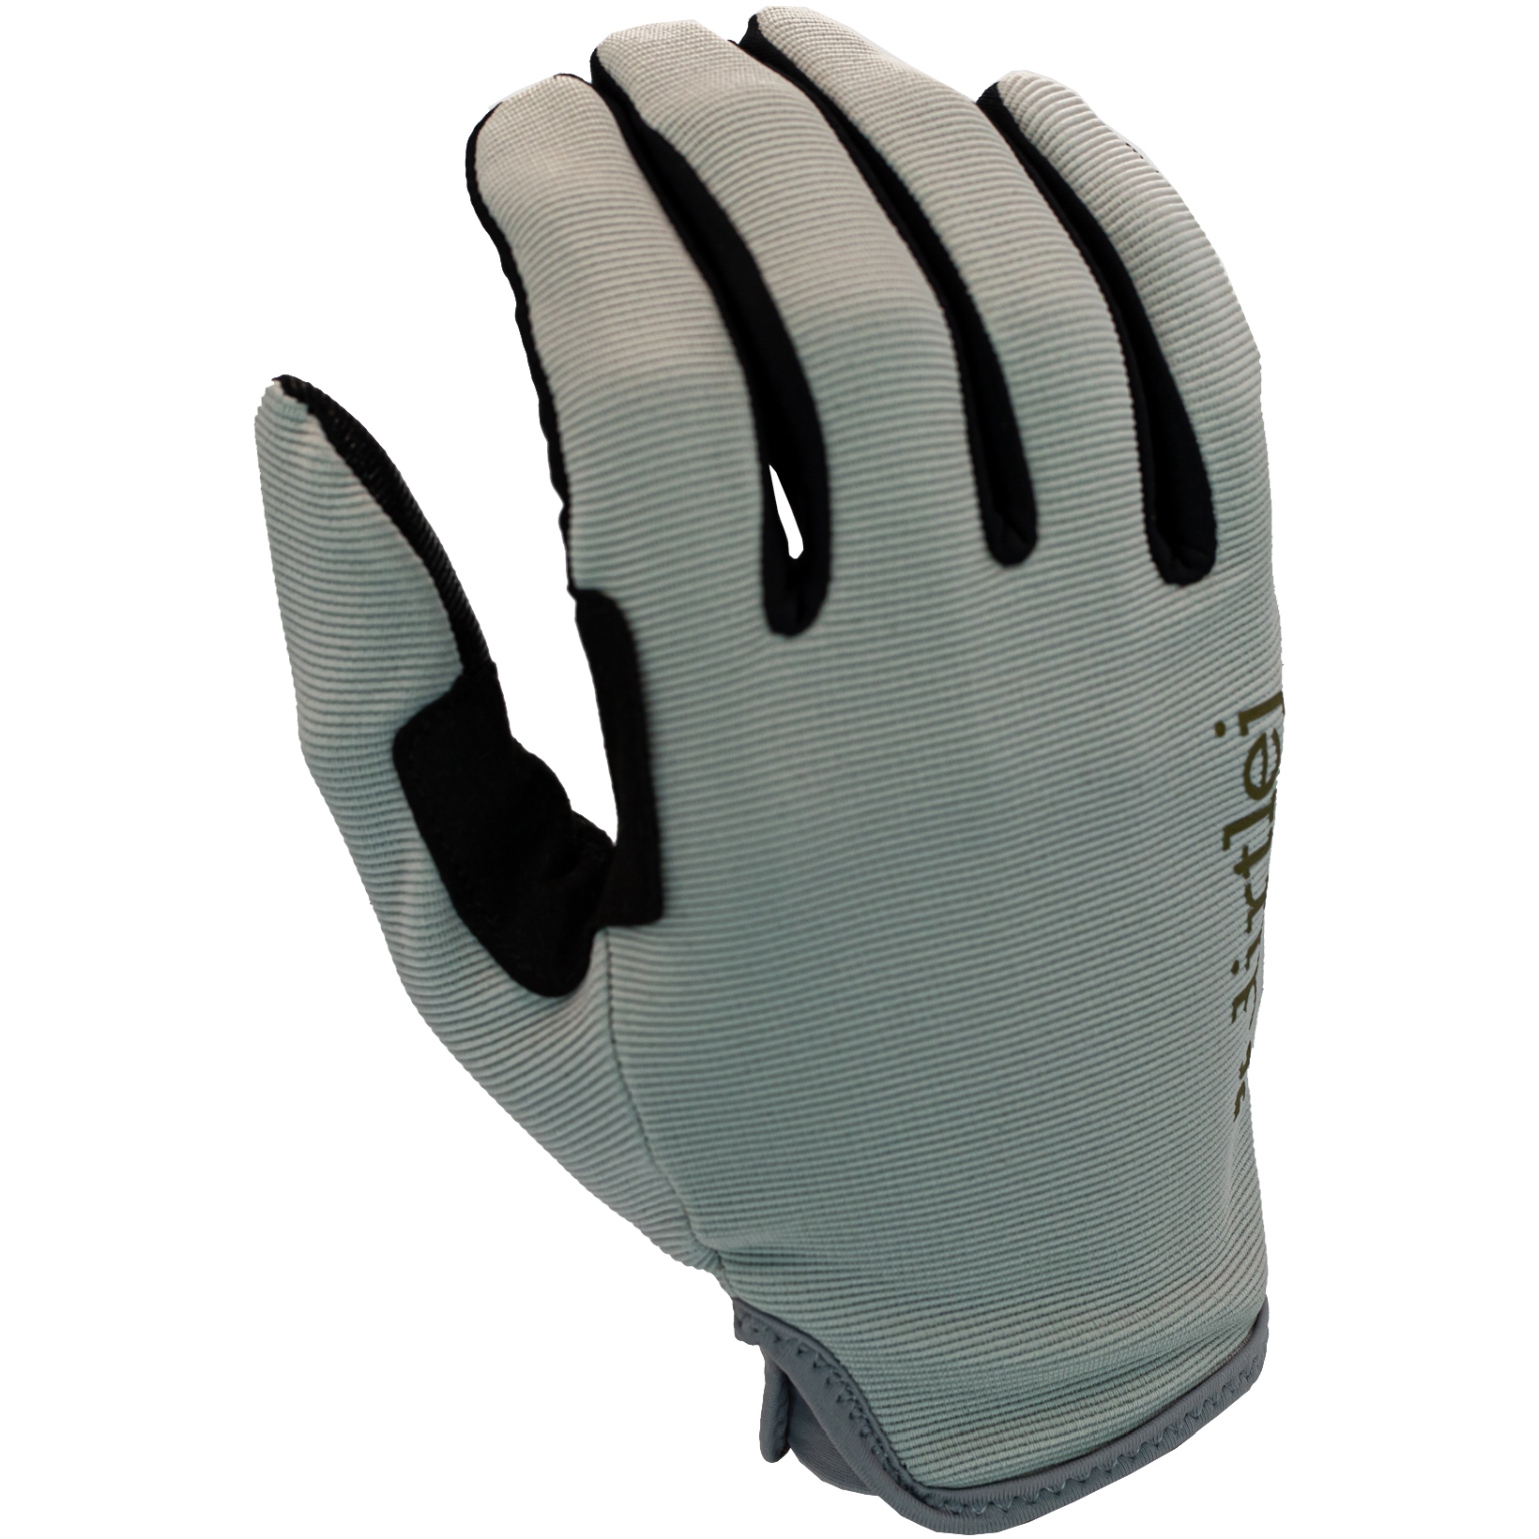 Productfoto van Dirtlej MTB Gloves - grey